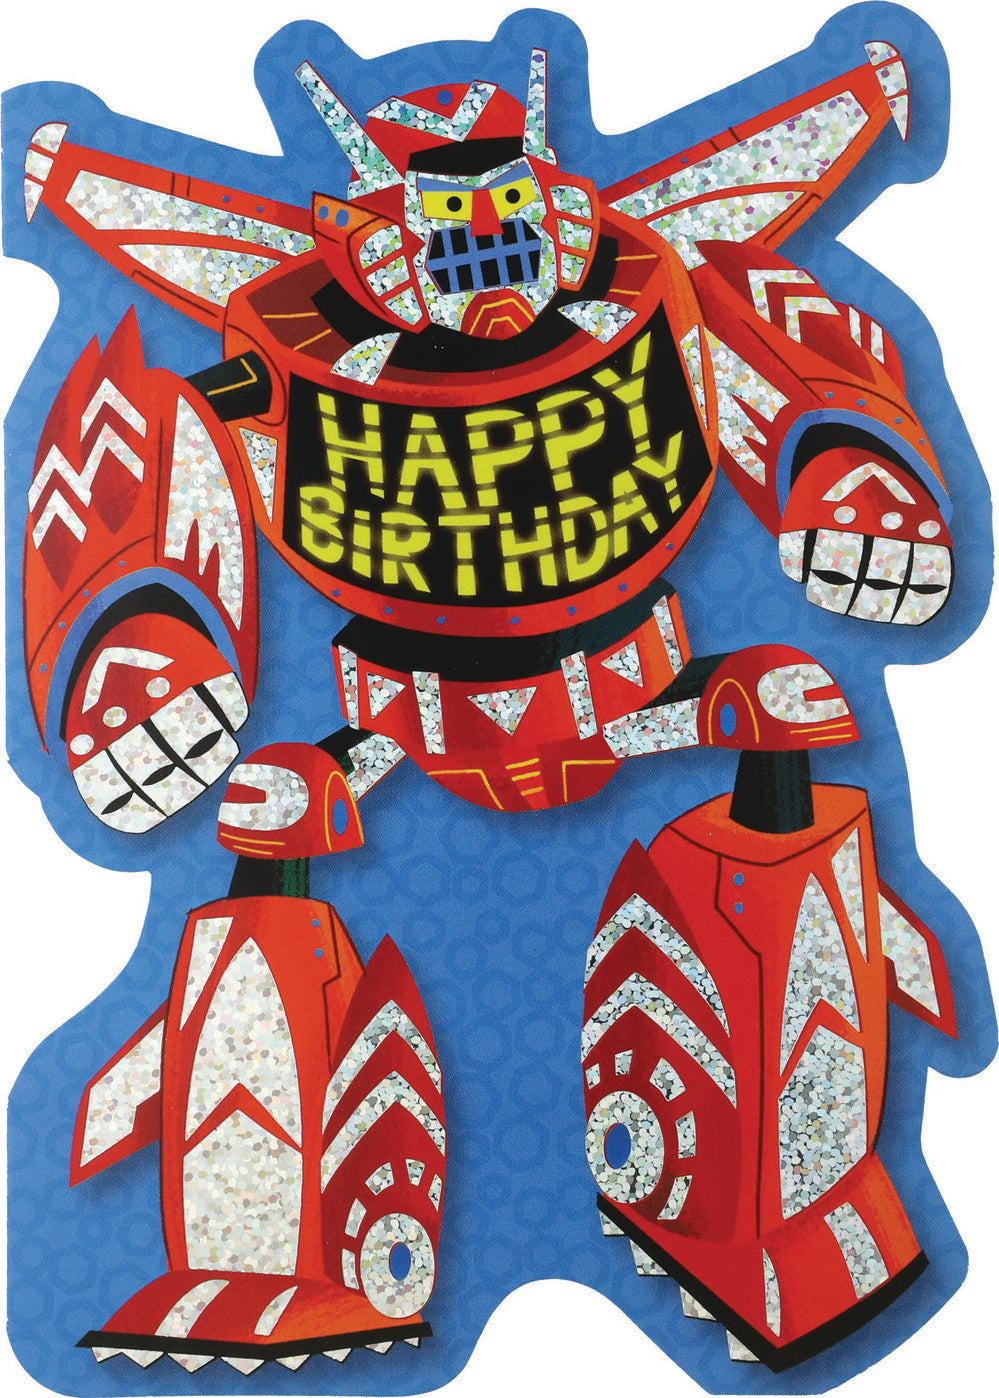 Transformer Birthday Card by Peaceable Kingdom